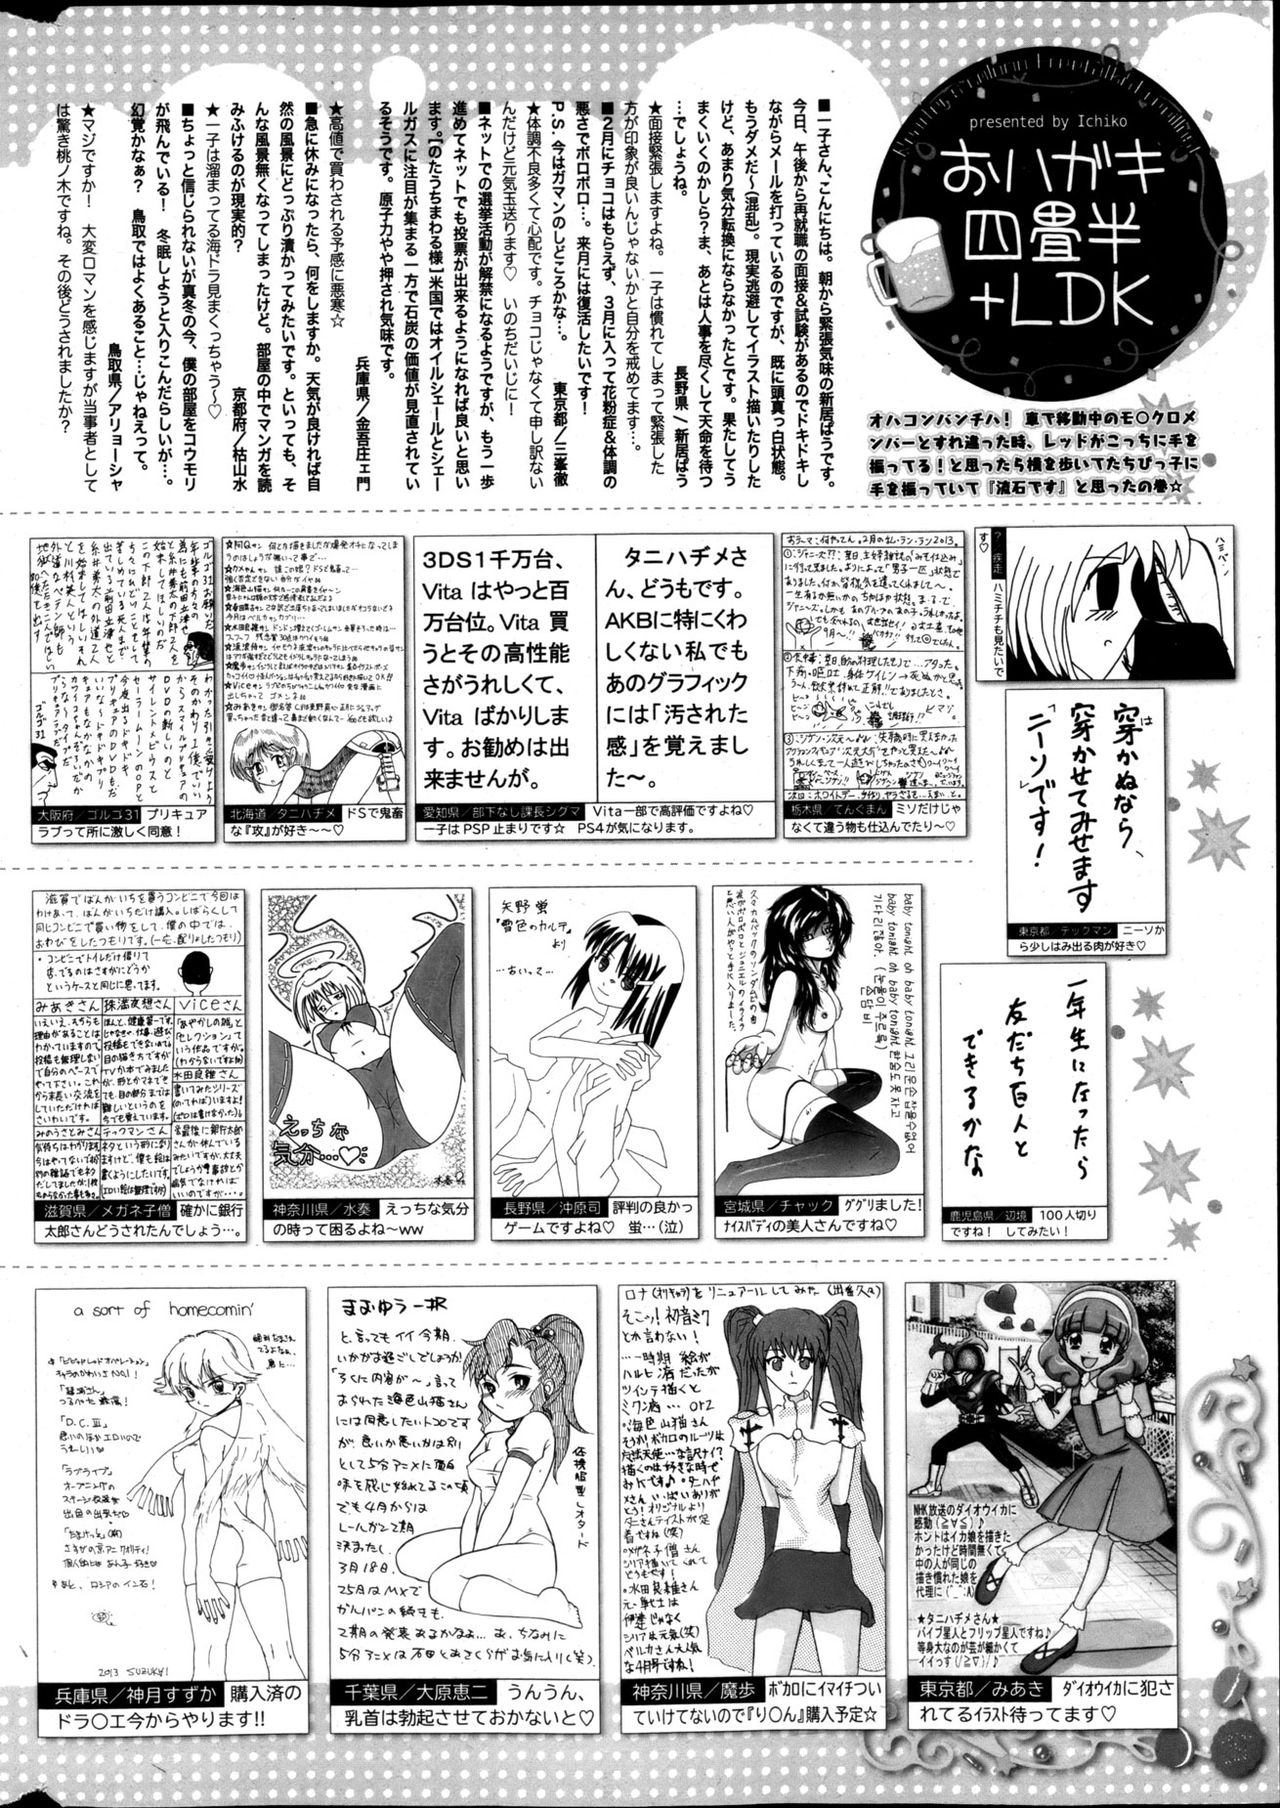 Manga Bangaichi 2013-05 漫画ばんがいち 2013年5月号